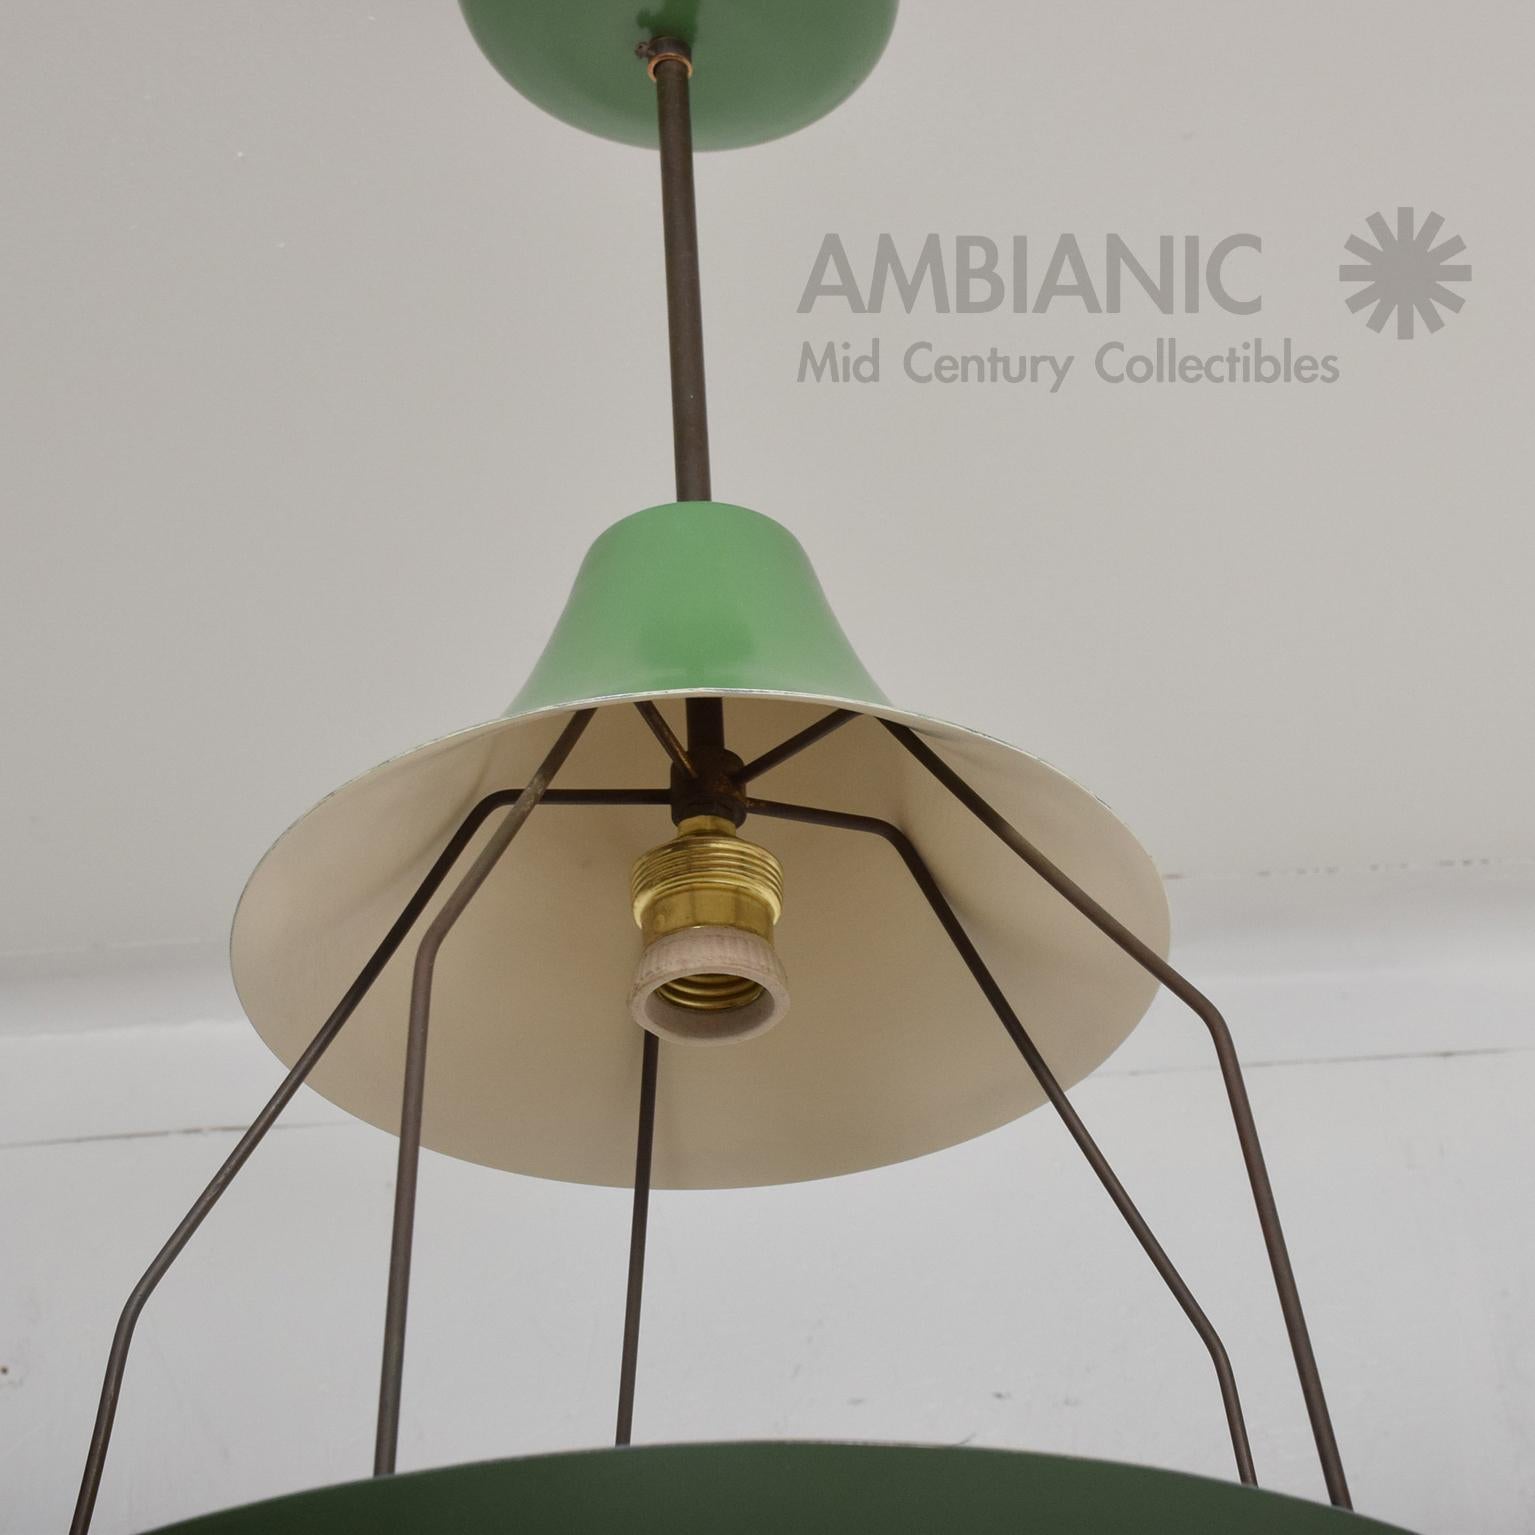 Aluminum Pistachio Green Tiered Italian Chandelier Lamp Mid-Century Modern, Italy, 1950s